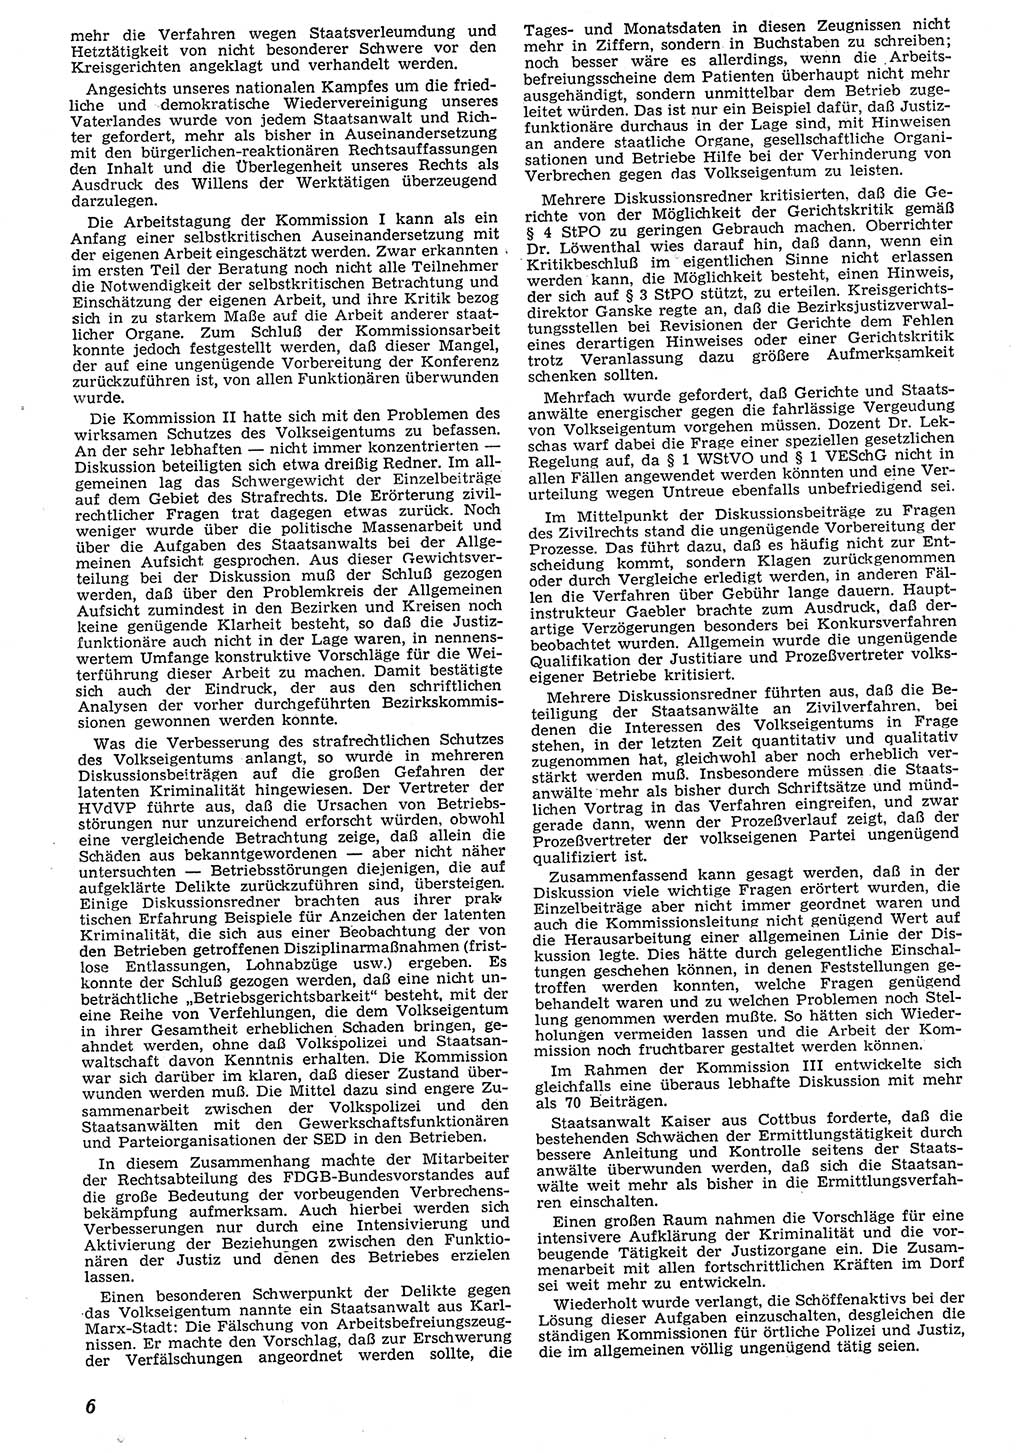 Neue Justiz (NJ), Zeitschrift für Recht und Rechtswissenschaft [Deutsche Demokratische Republik (DDR)], 10. Jahrgang 1956, Seite 6 (NJ DDR 1956, S. 6)